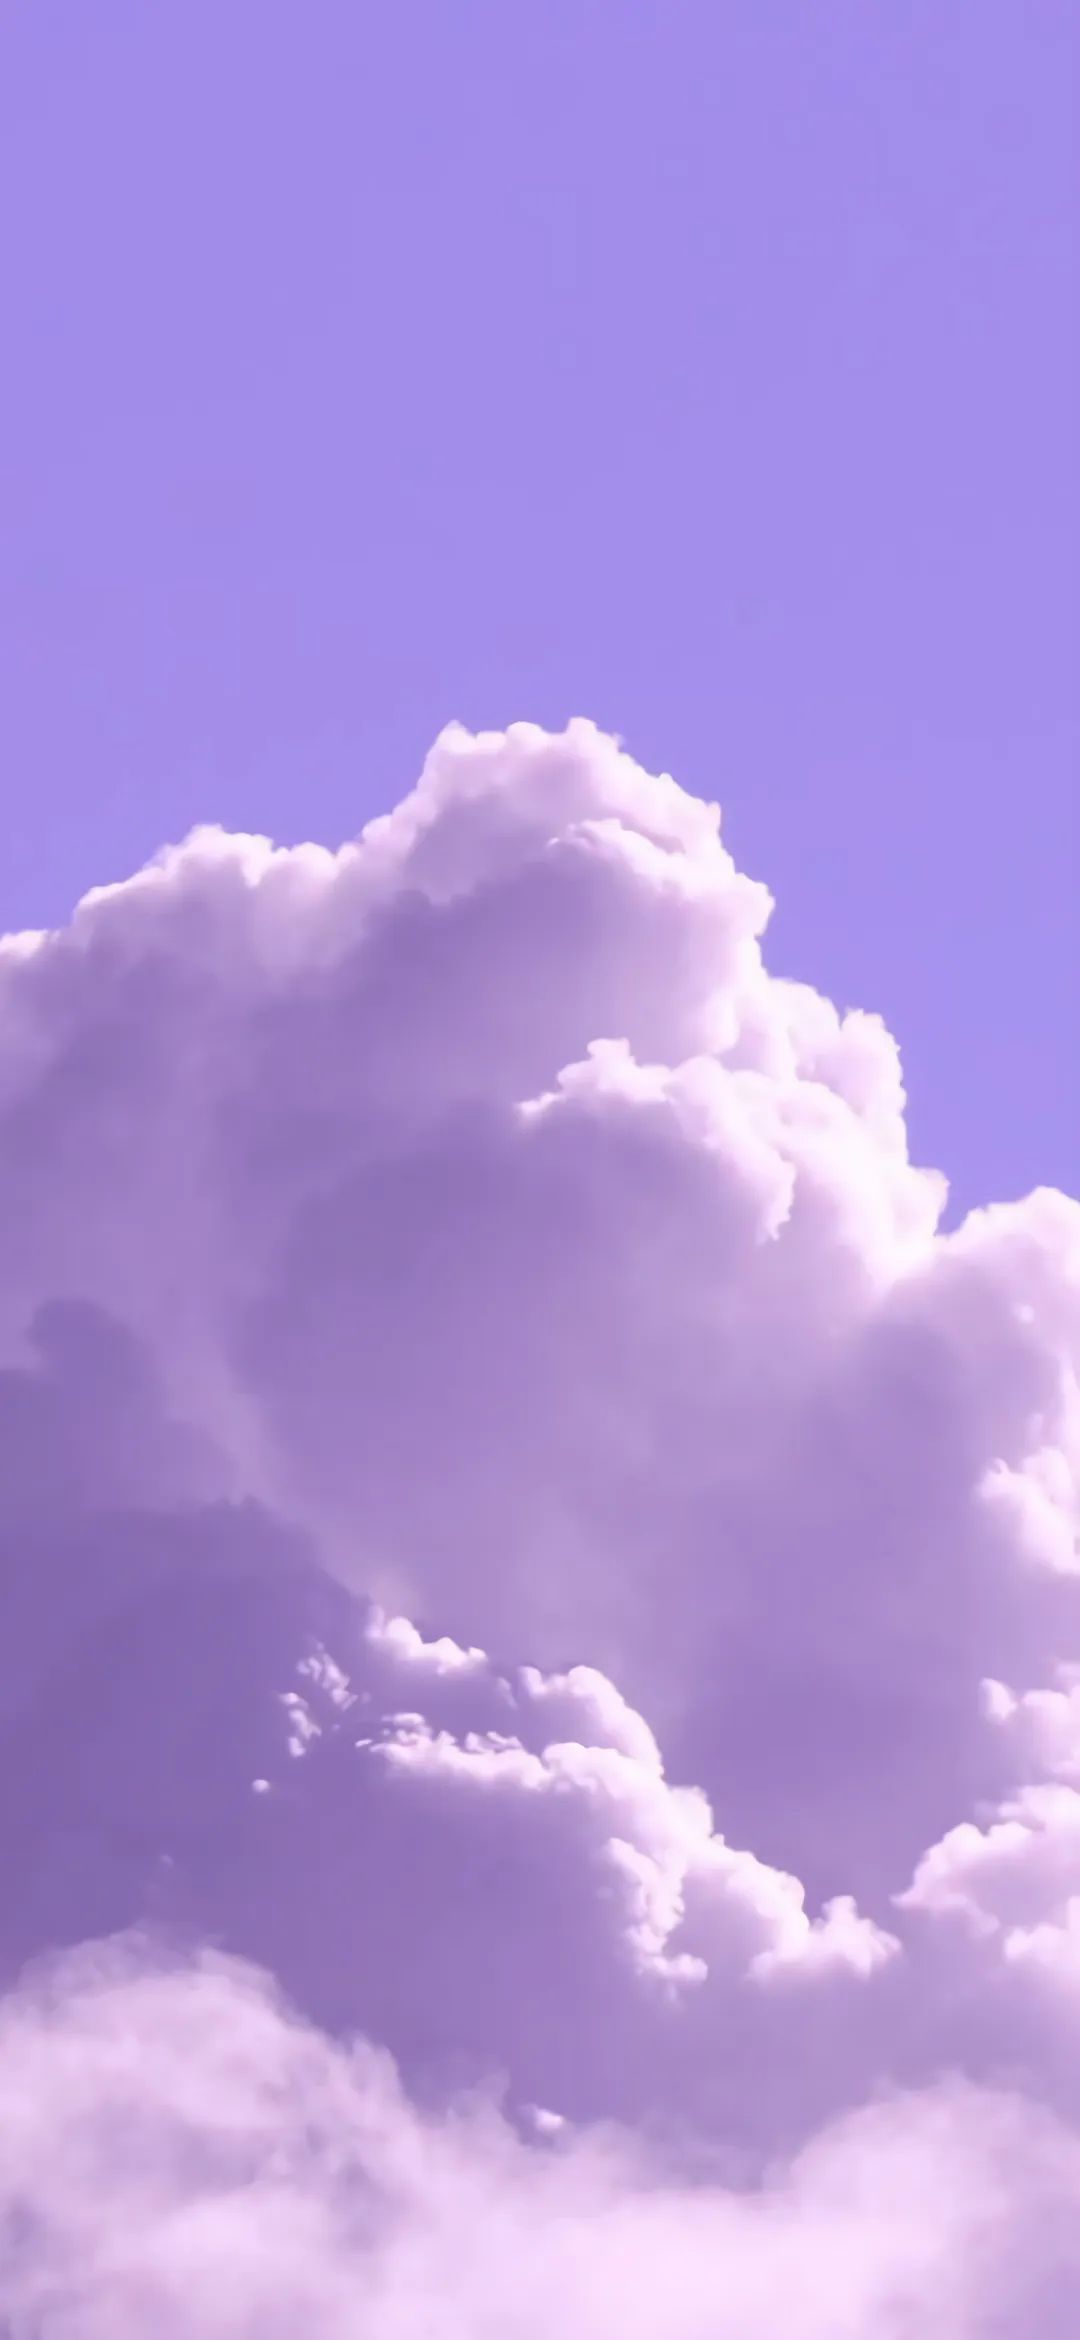 紫色云朵 紫色背景图 紫色壁纸 风景 天空